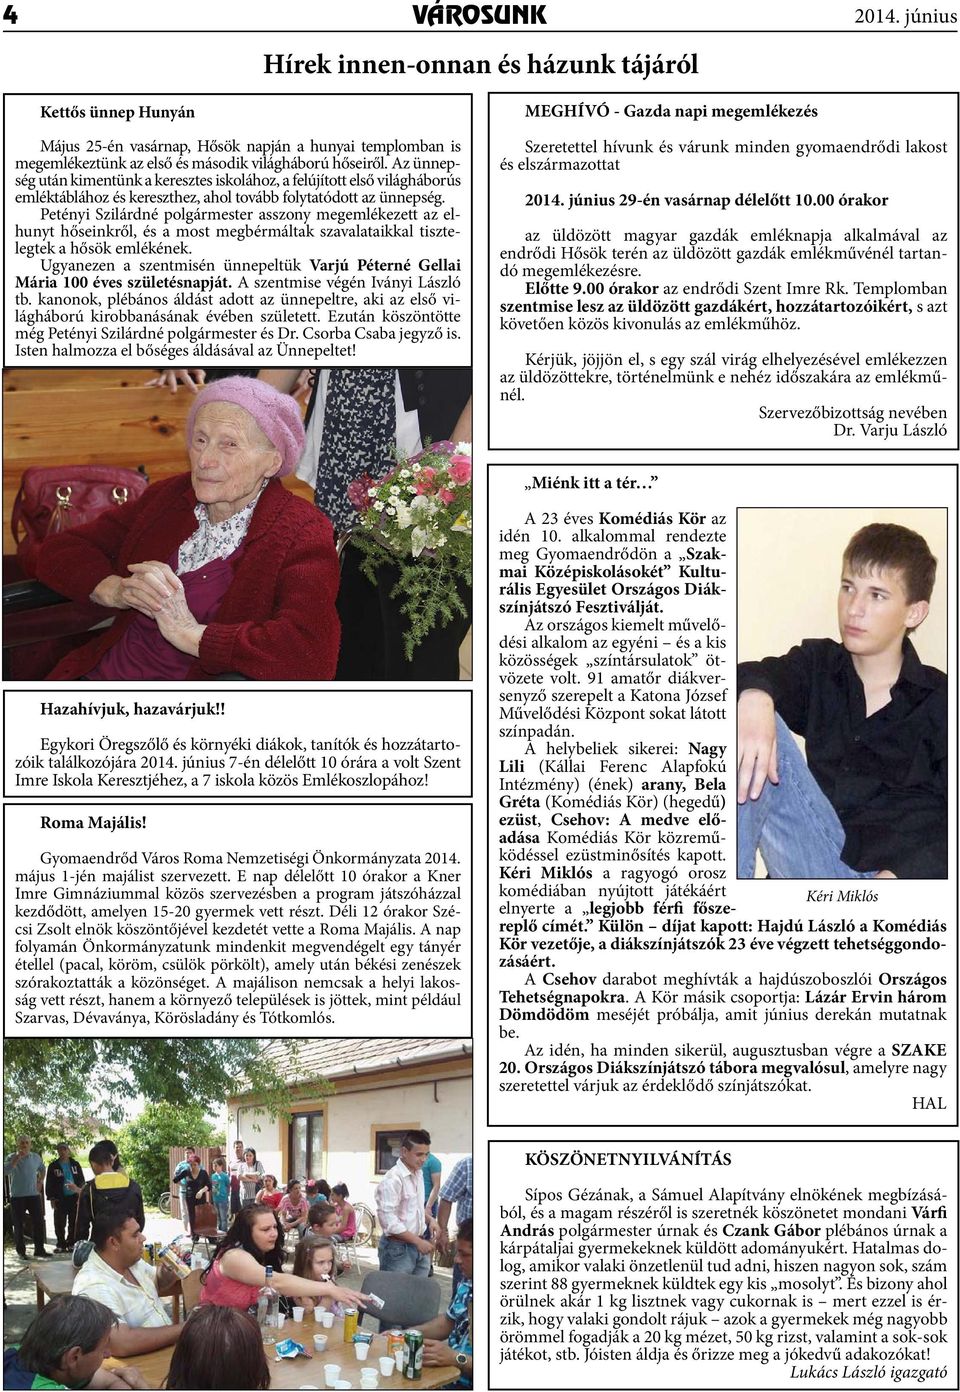 Petényi Szilárdné polgármester asszony megemlékezett az elhunyt hőseinkről, és a most megbérmáltak szavalataikkal tisztelegtek a hősök emlékének.